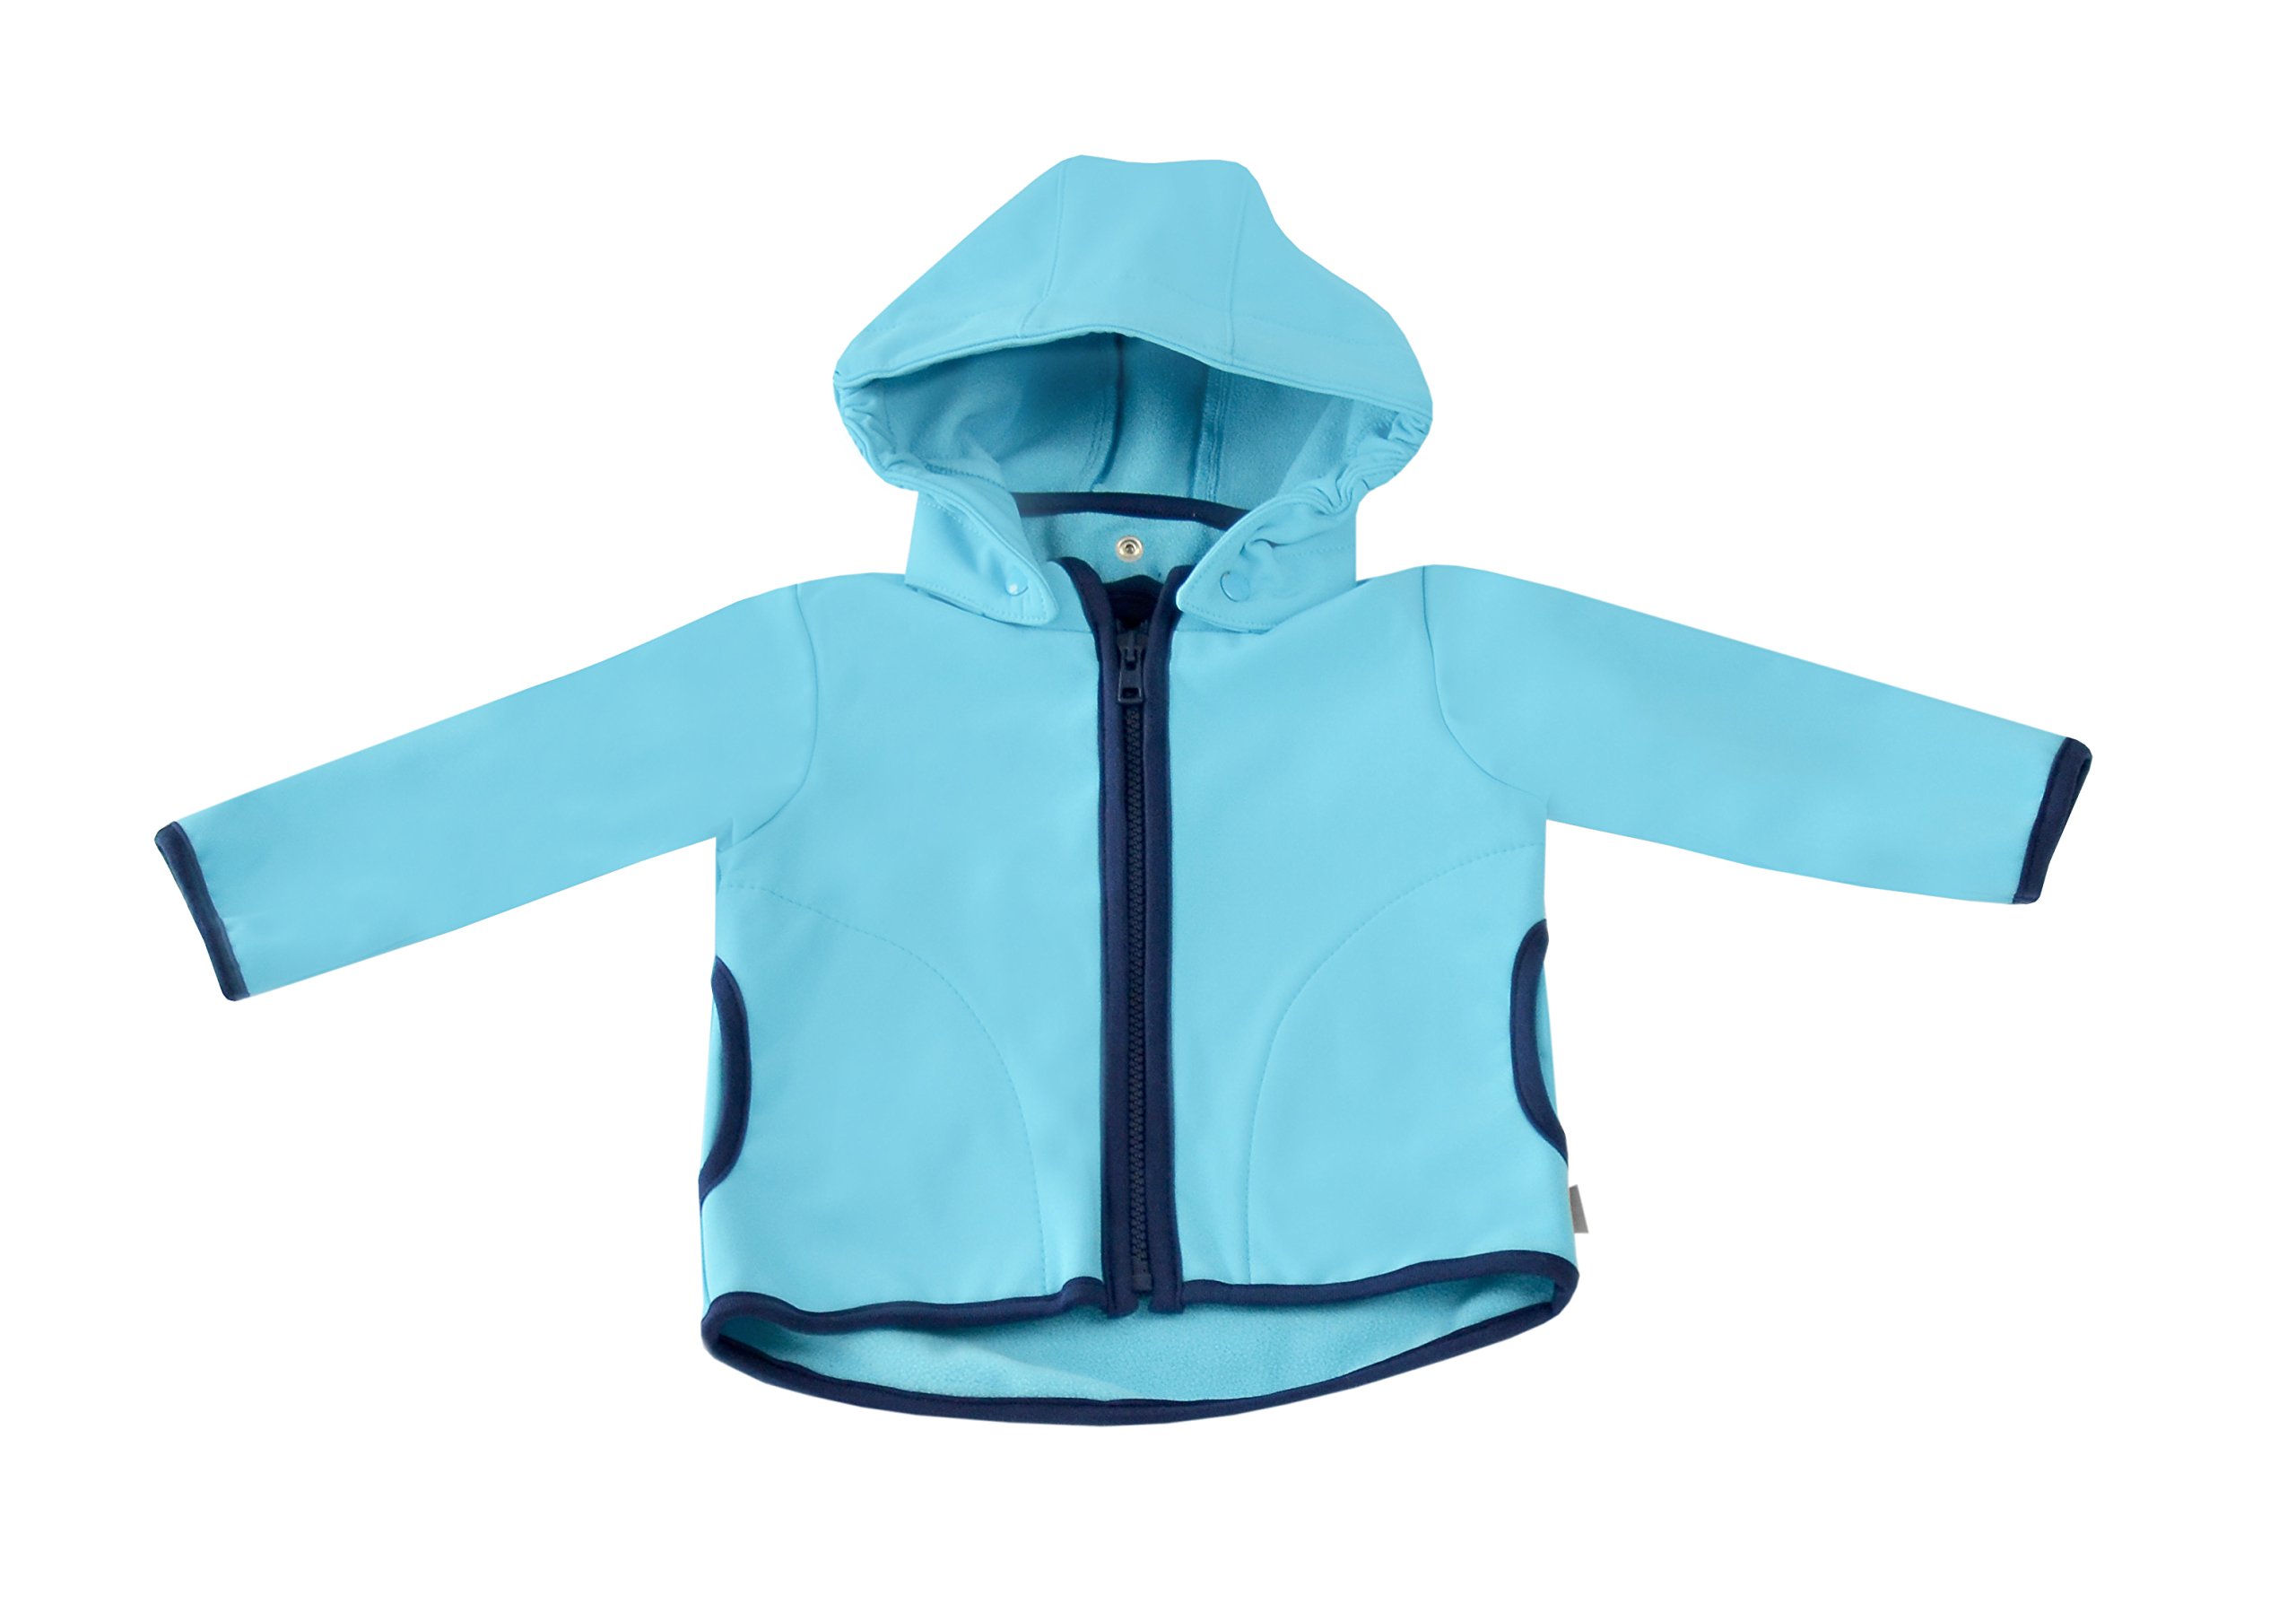 be! Baby/Kinder Softshell Jacke mit Leichter Fleece-Schicht innen, Wassersäule: 10.000 mm, Gr. 80/86, türkis